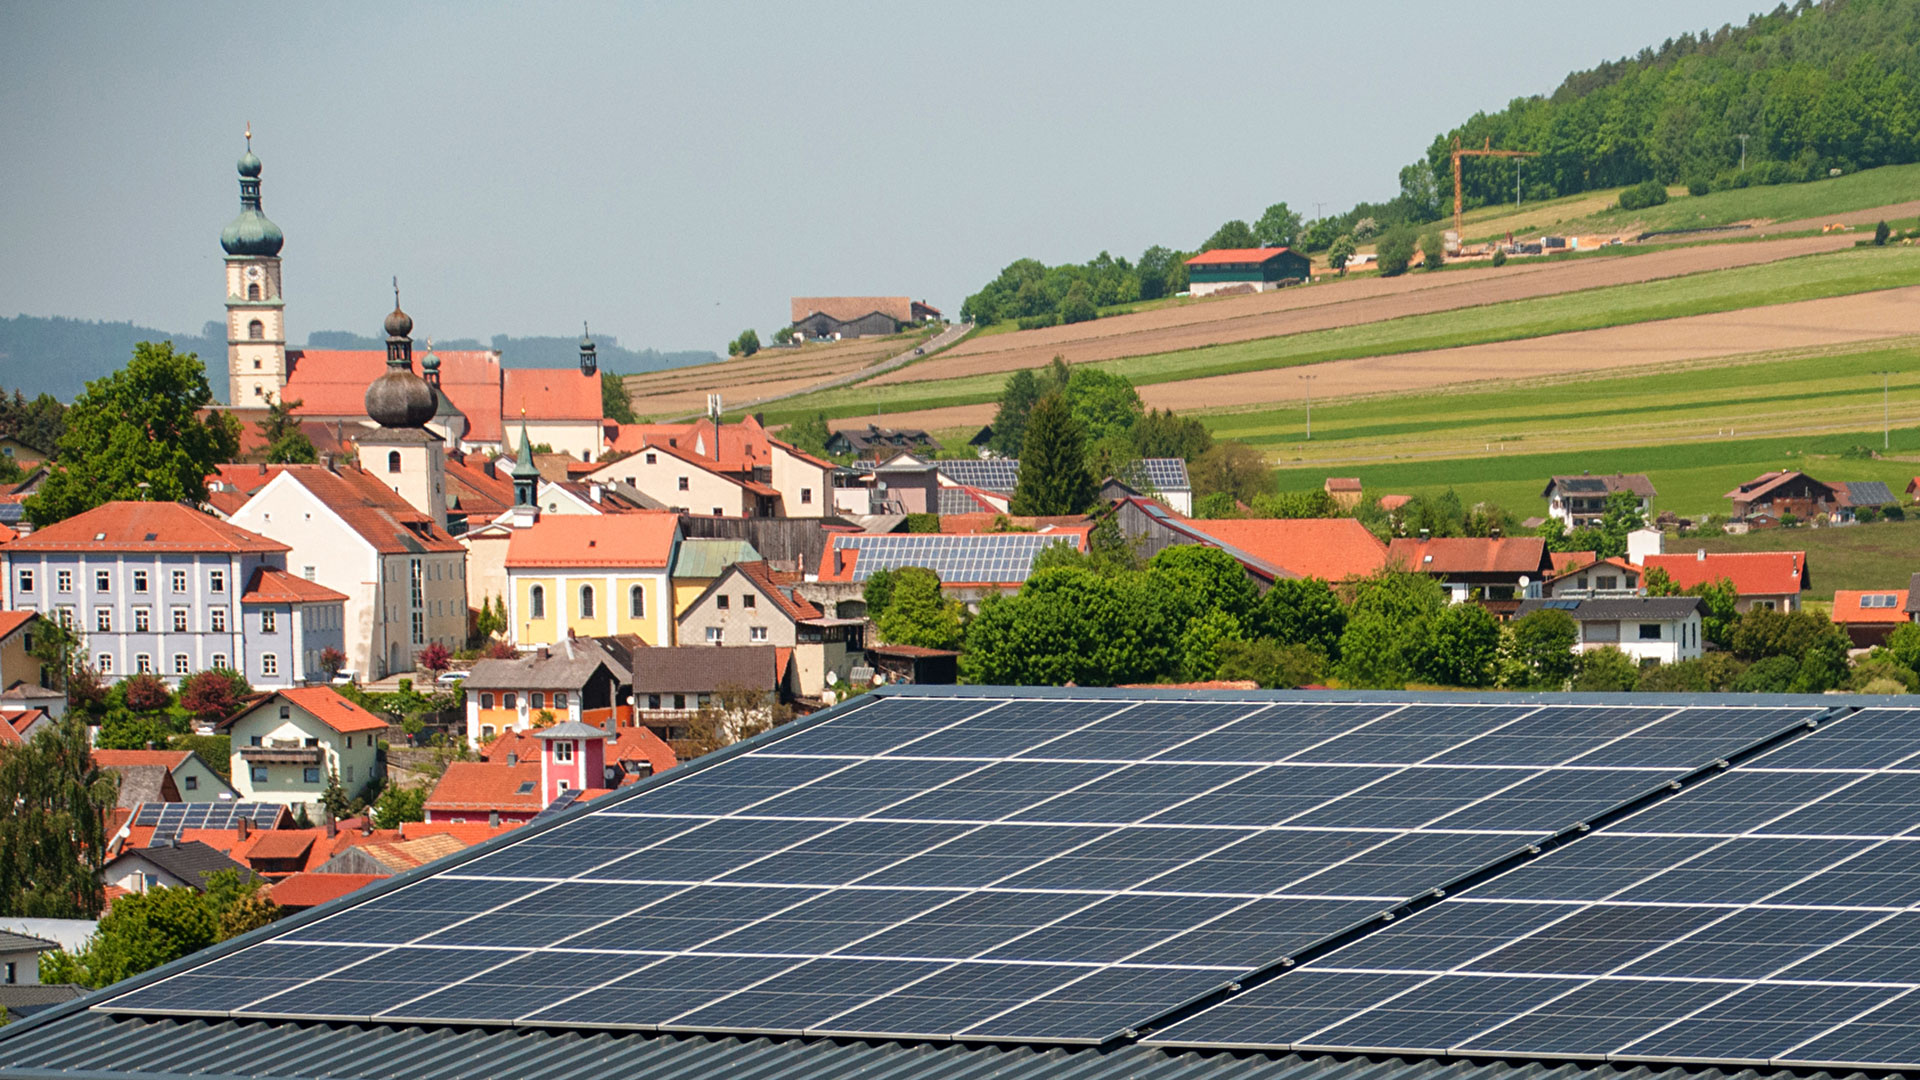 Panoramabild von einer bayerischen Gemeinde mit Photovoltaik-Anlagen auf vereinzelten Dächern